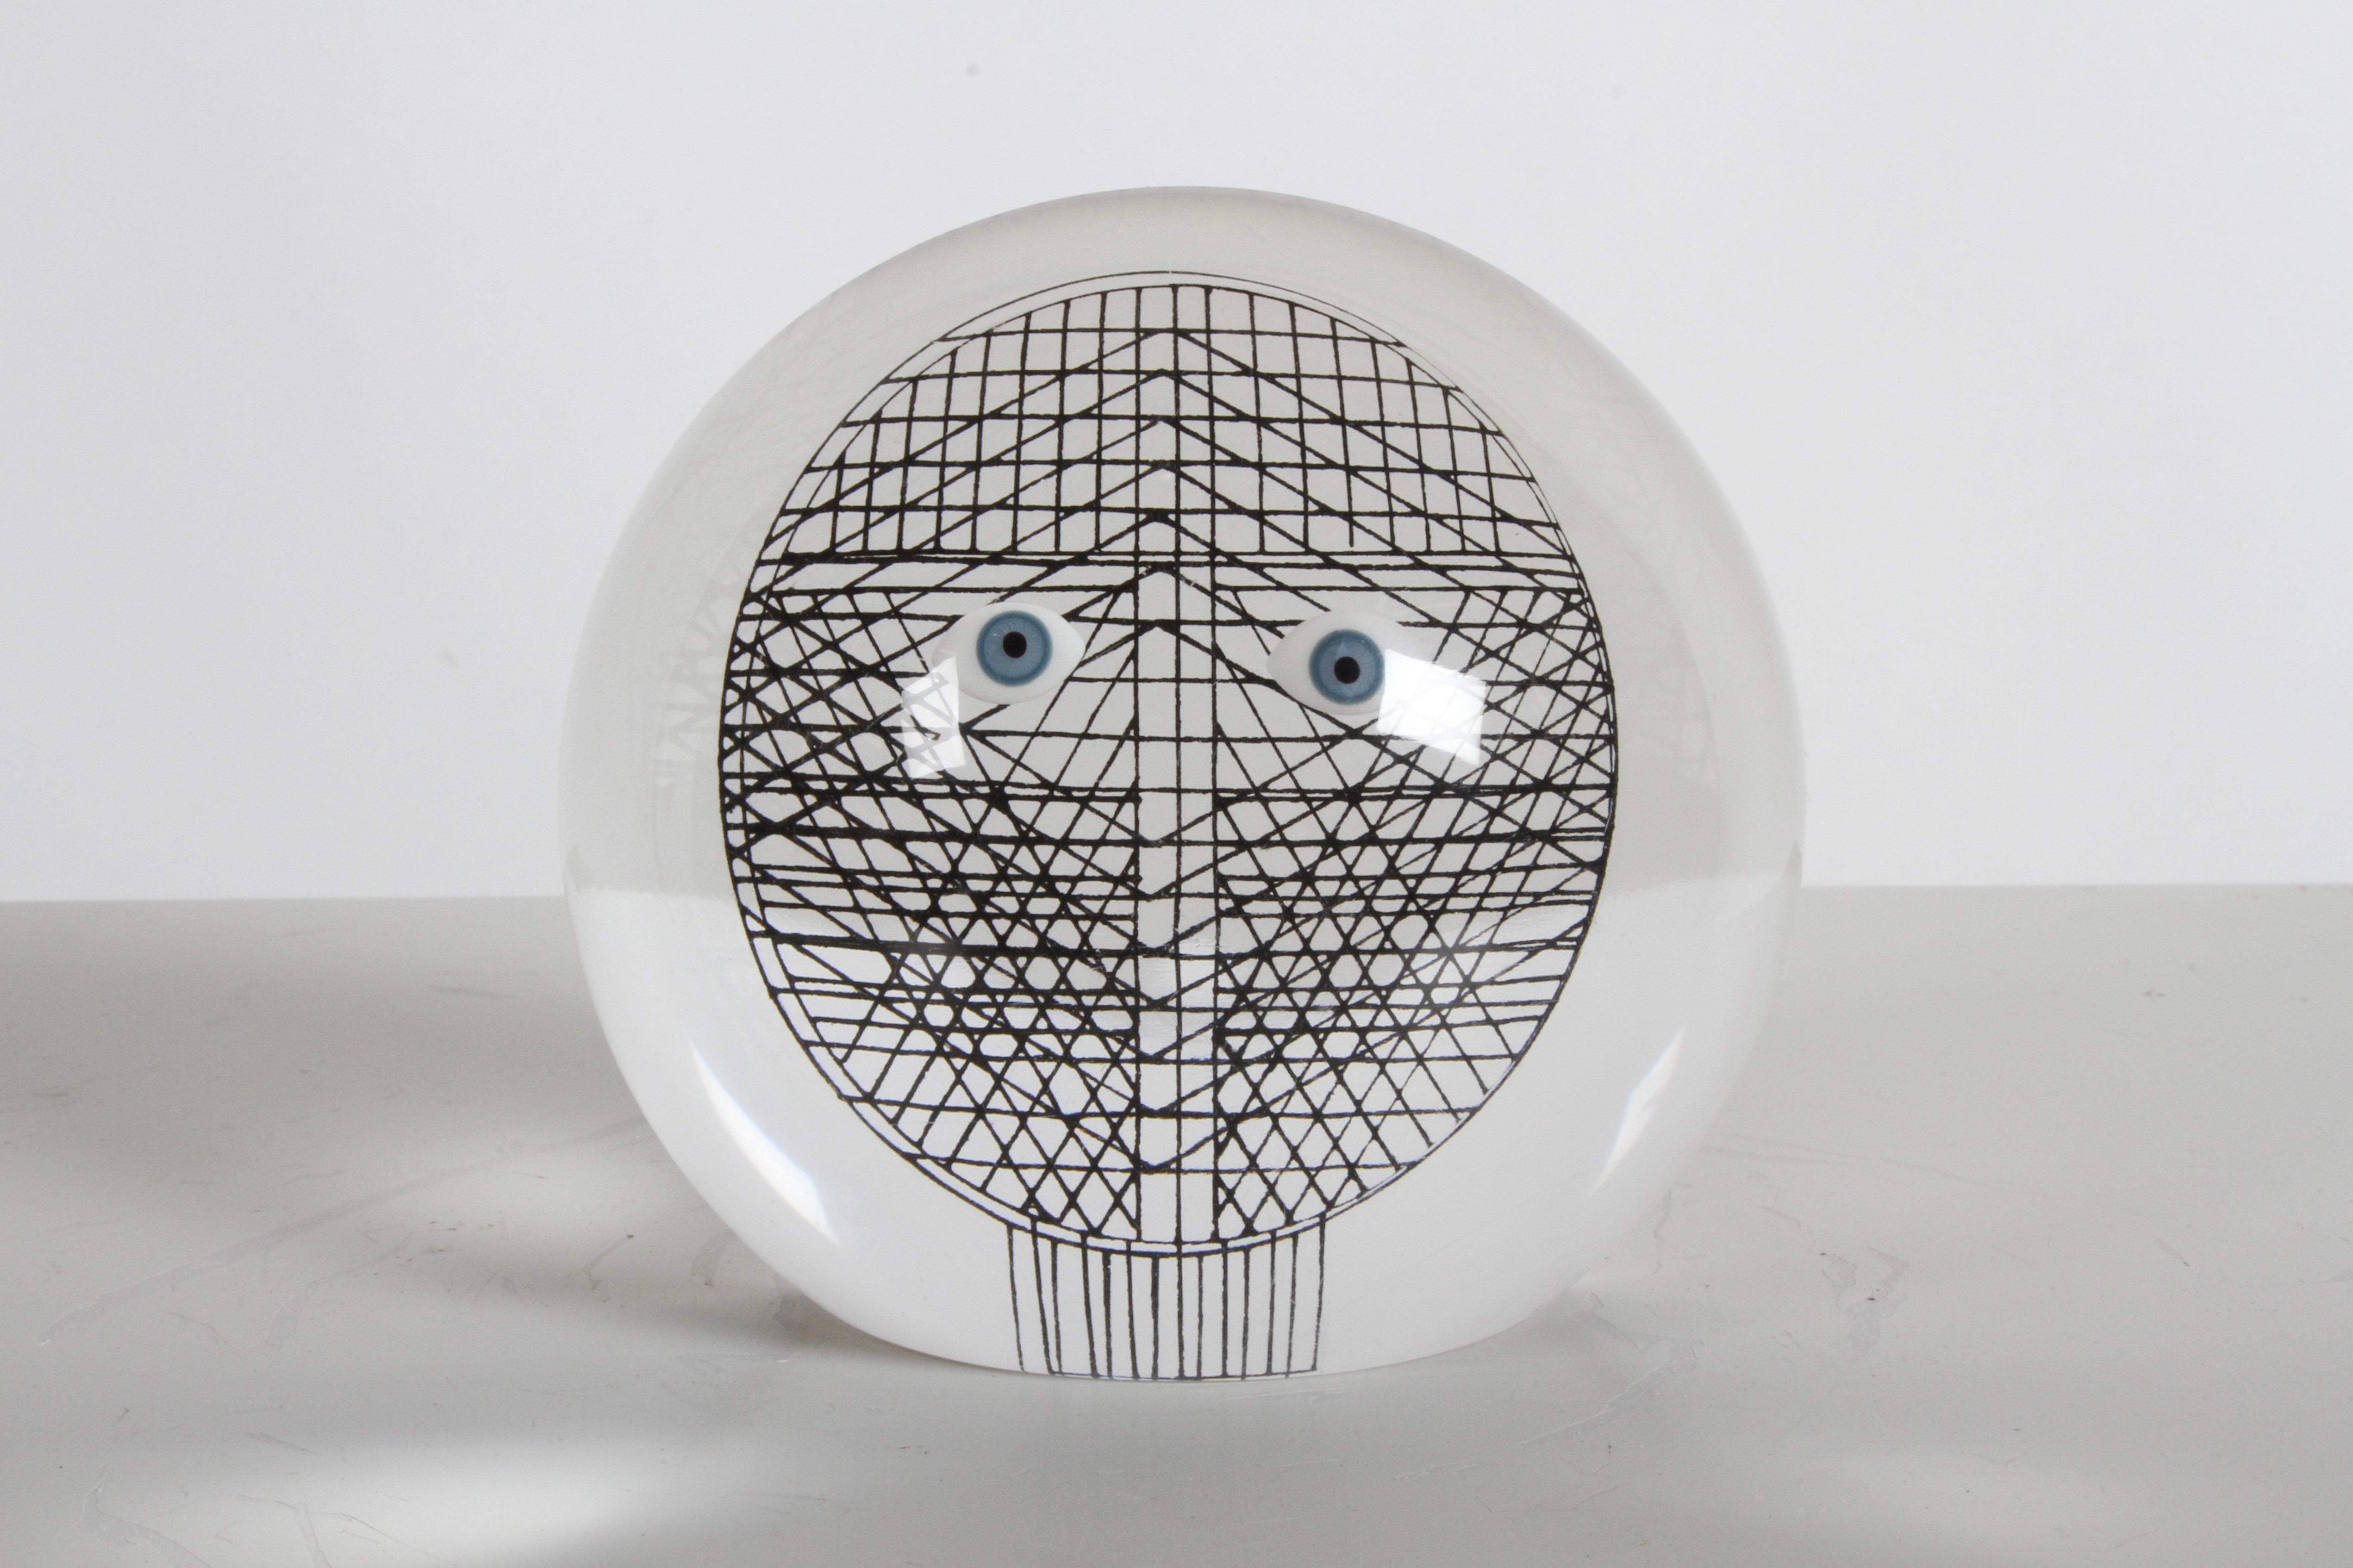 Sculpture demi-ronde en lucite de Merle Edelman, datant des années 1970, avec des yeux en 3D sur une grille géométrique noire. Style similaire à celui d'Abraham Palatnik. En bon état, pas de problème.